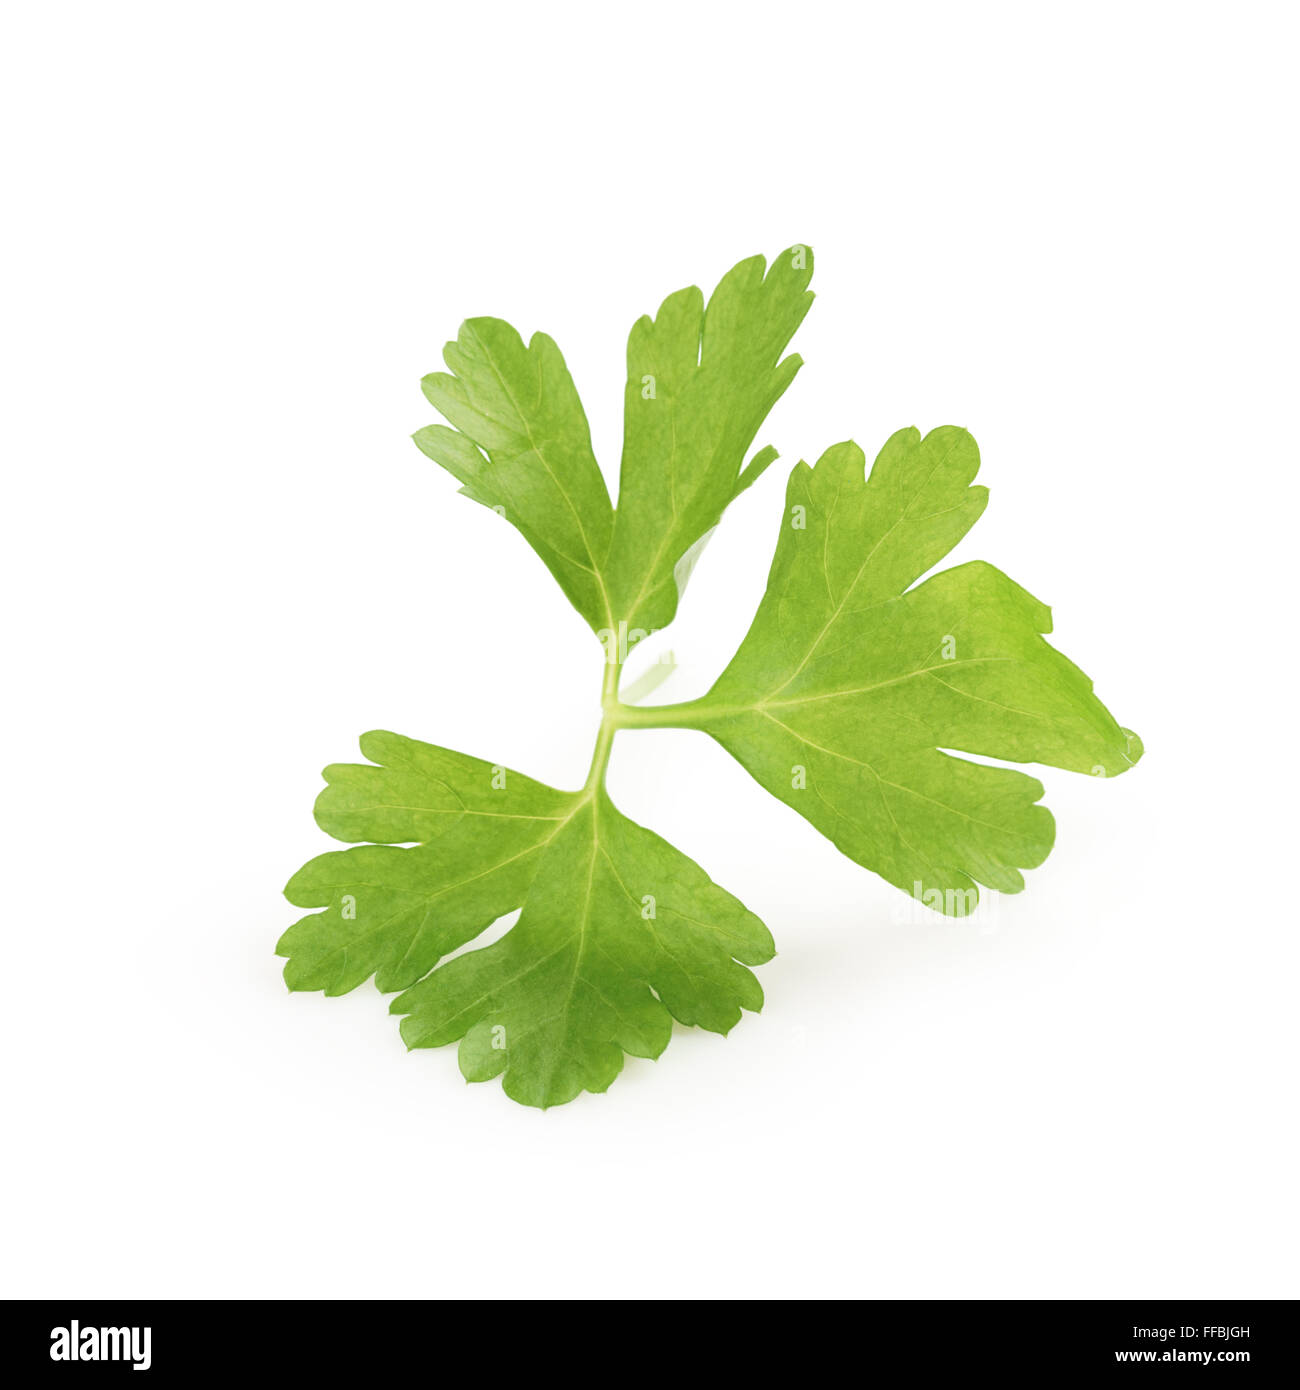 https://c8.alamy.com/comp/FFBJGH/fresh-green-parsley-leaf-isolated-FFBJGH.jpg